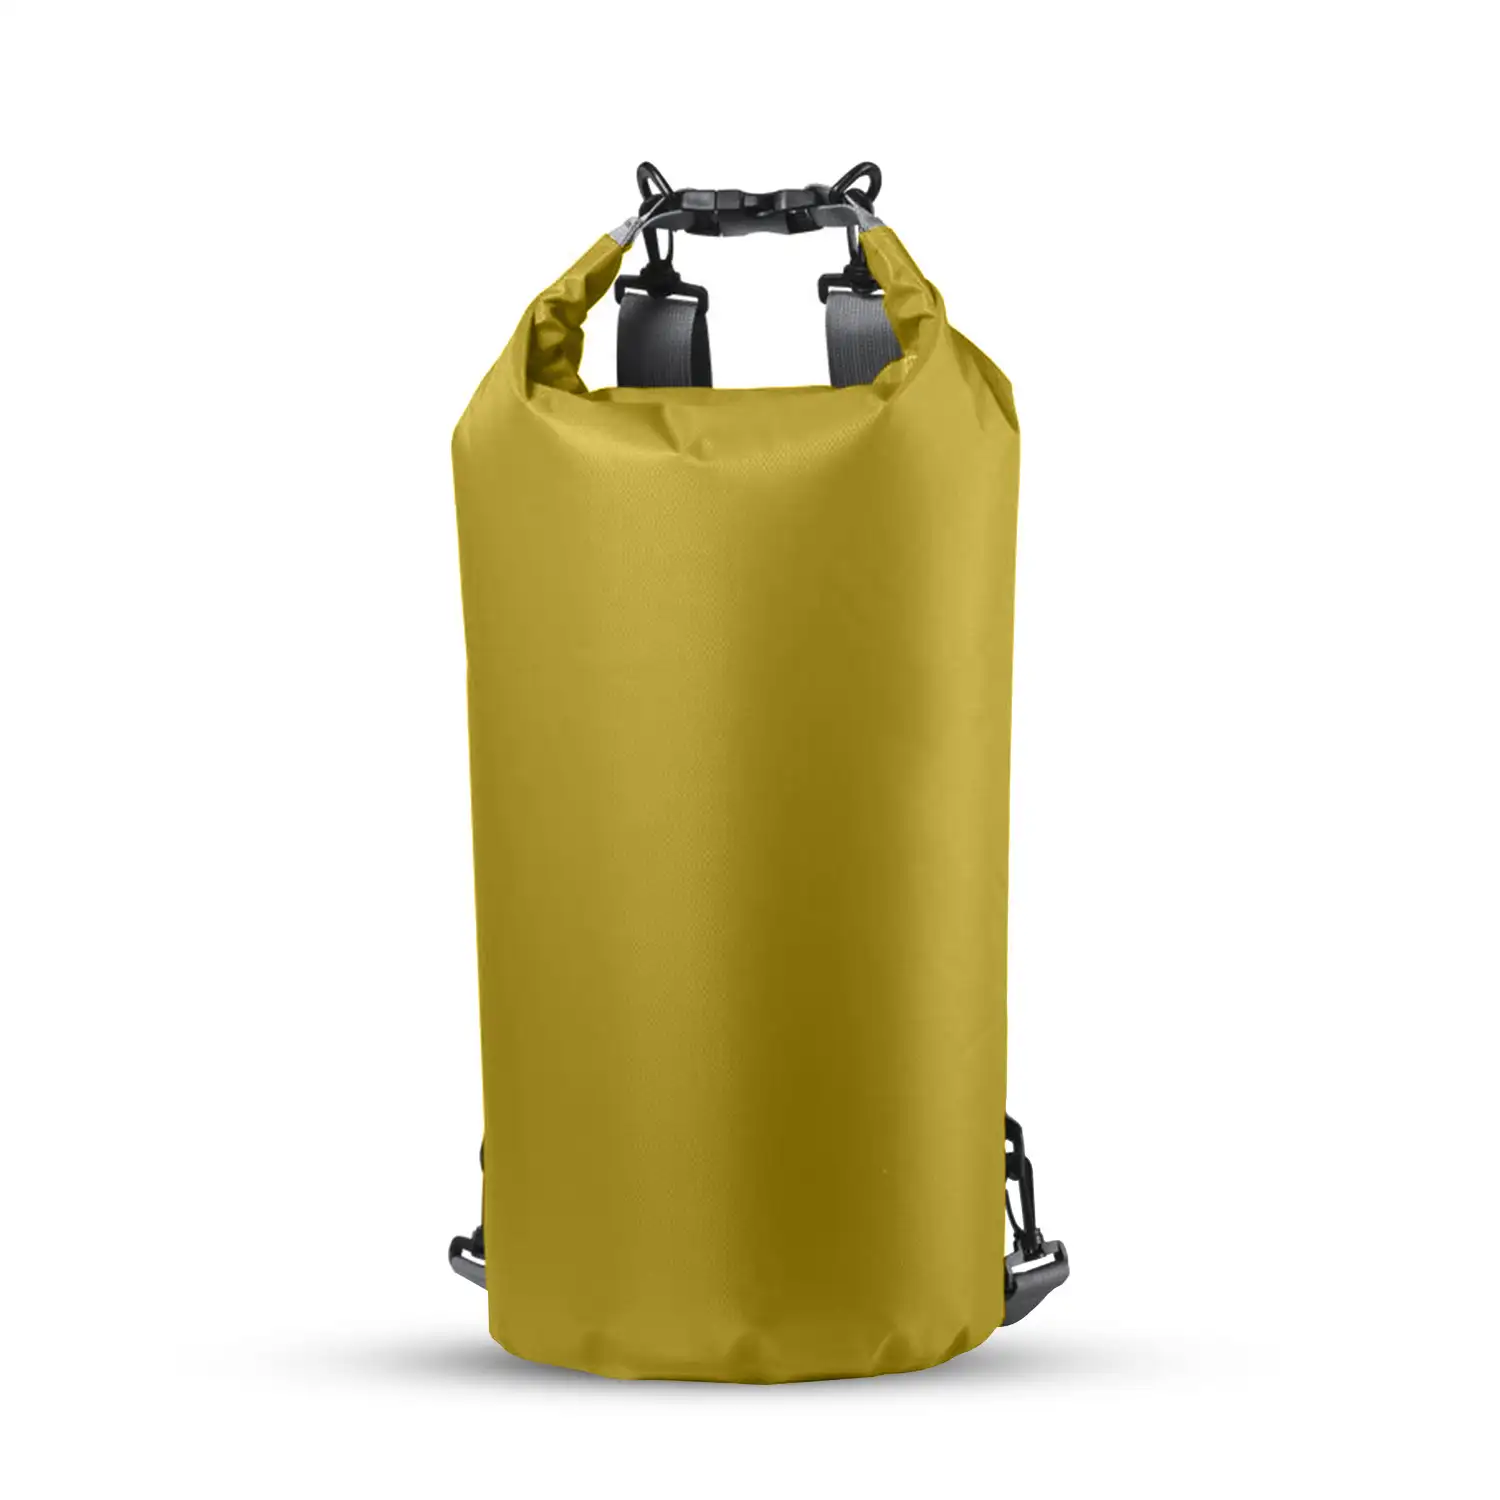 Tayrux mochila impermeable en suave y resistente Ripstop con cierre estanco  de seguridad. 20 litros de